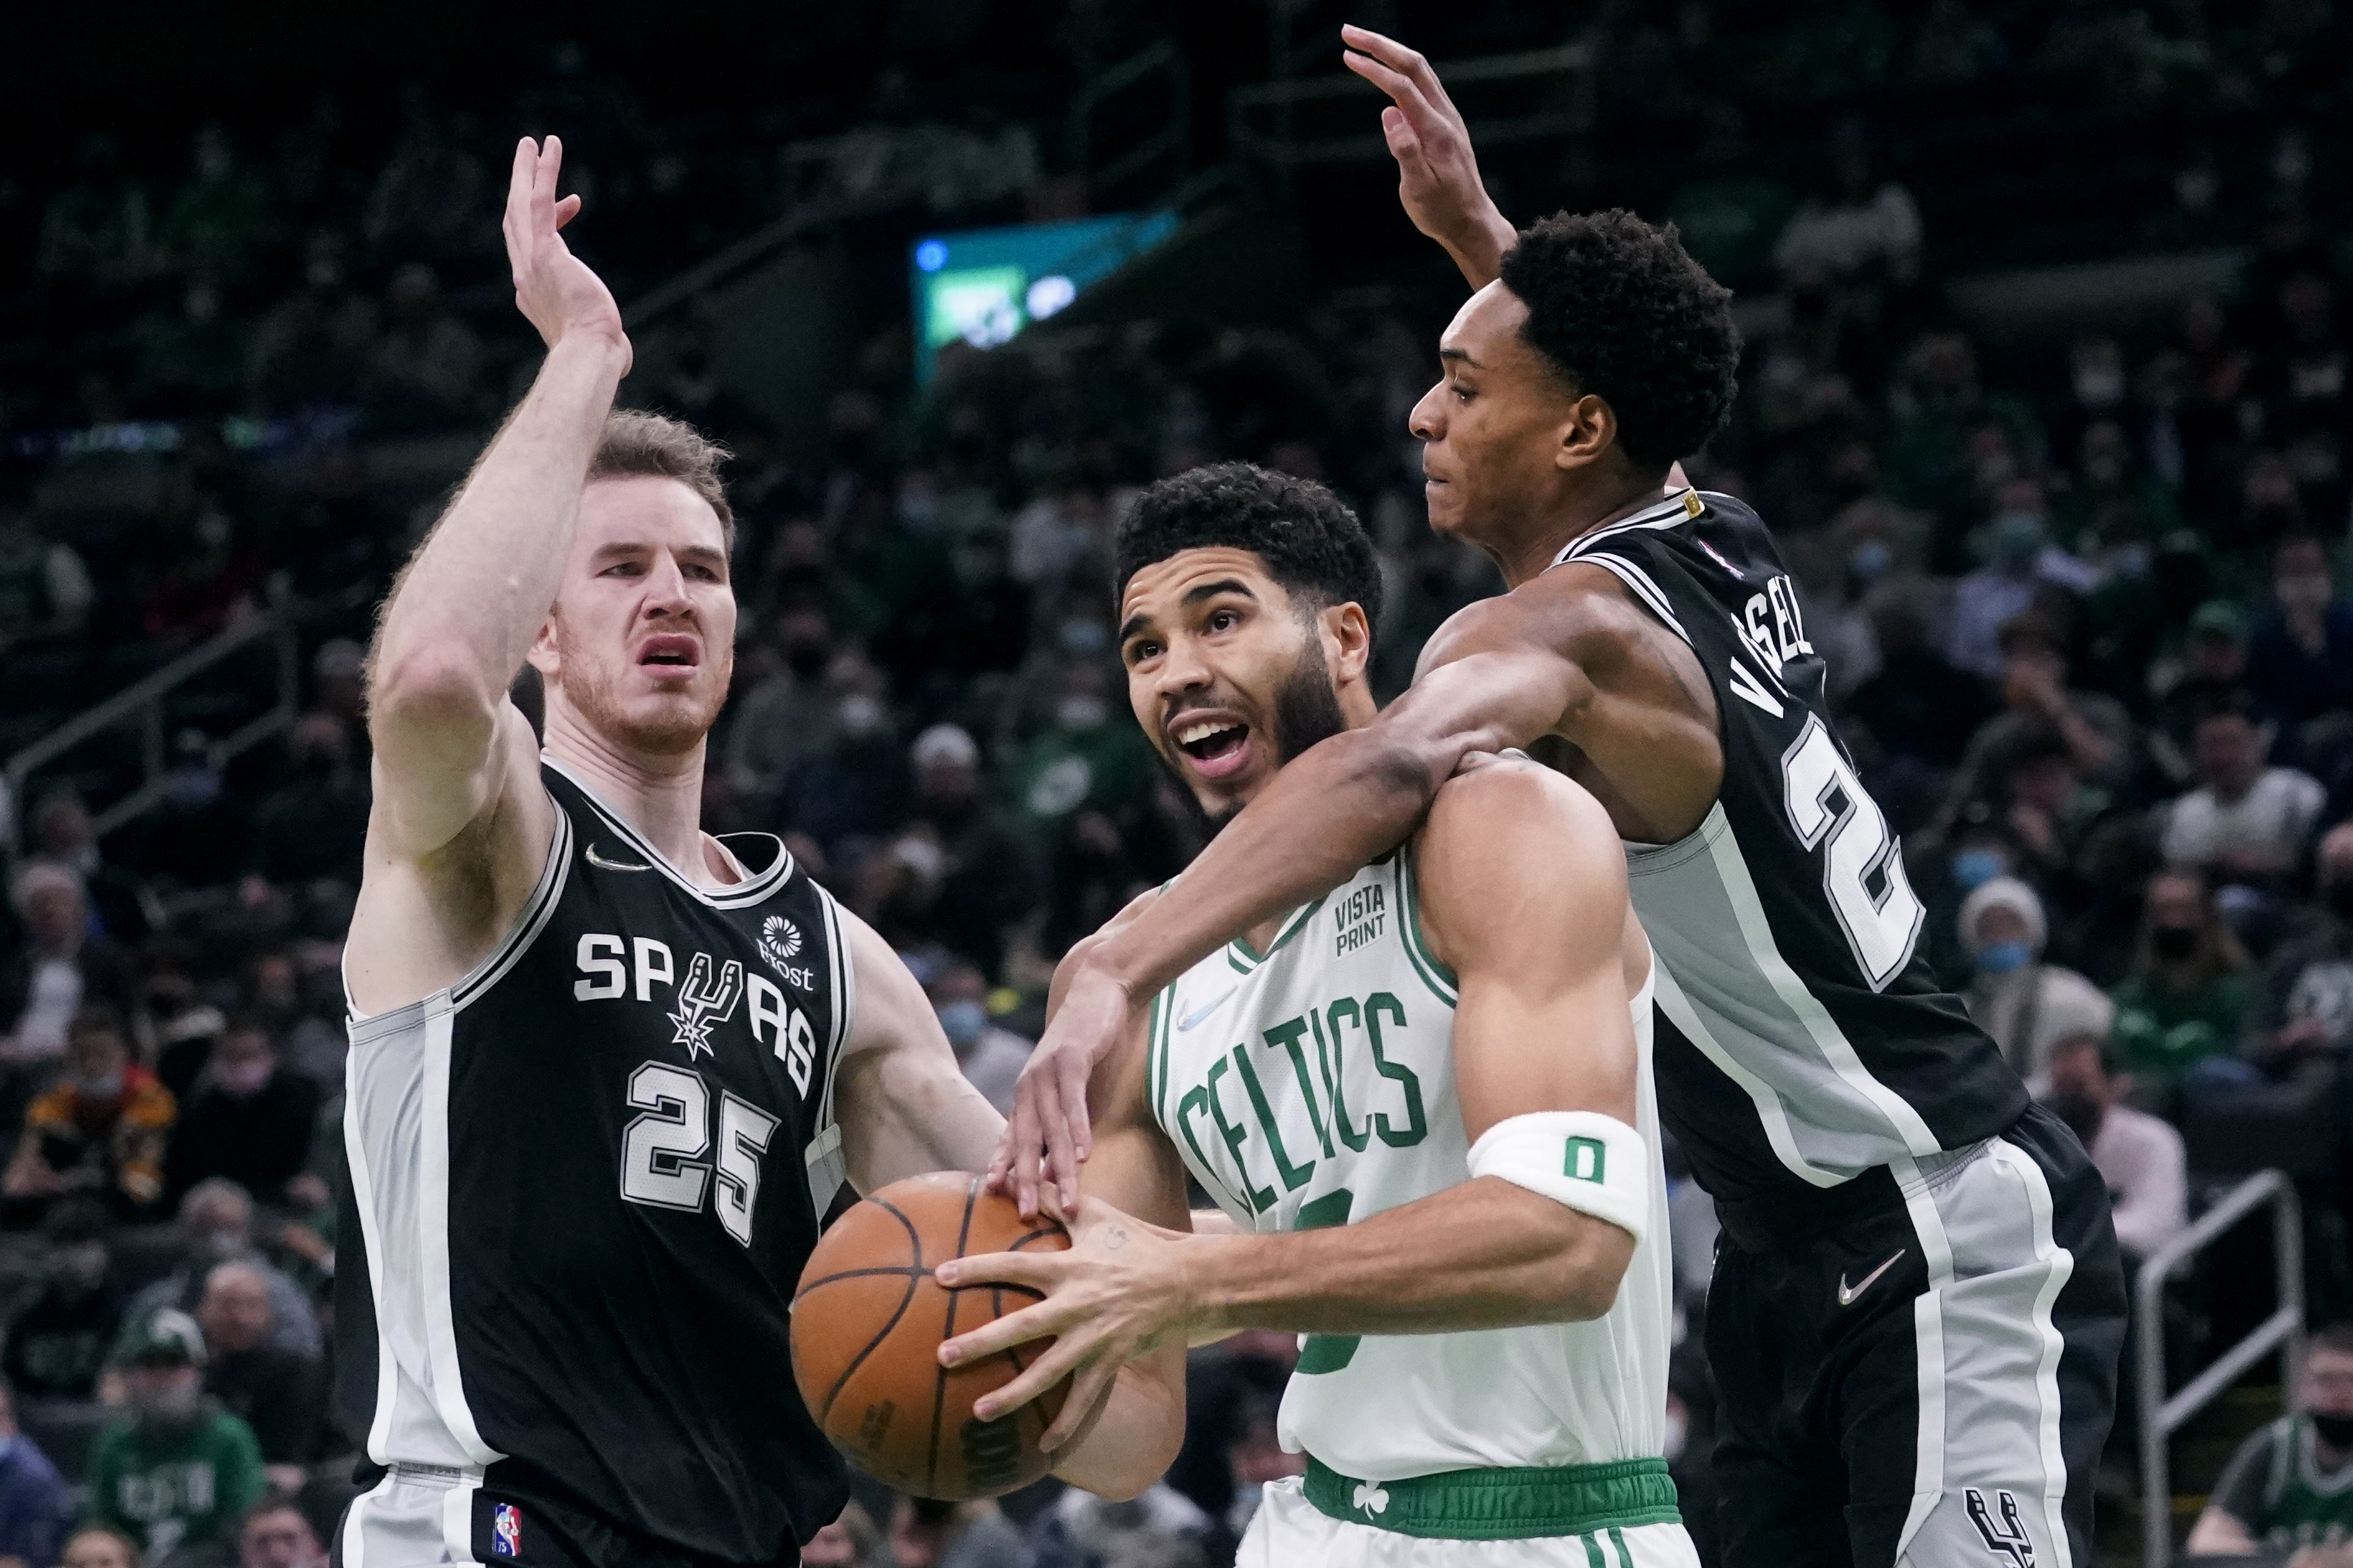 Spurs best Celtics 96-88 after blowing 24-point advantage - The